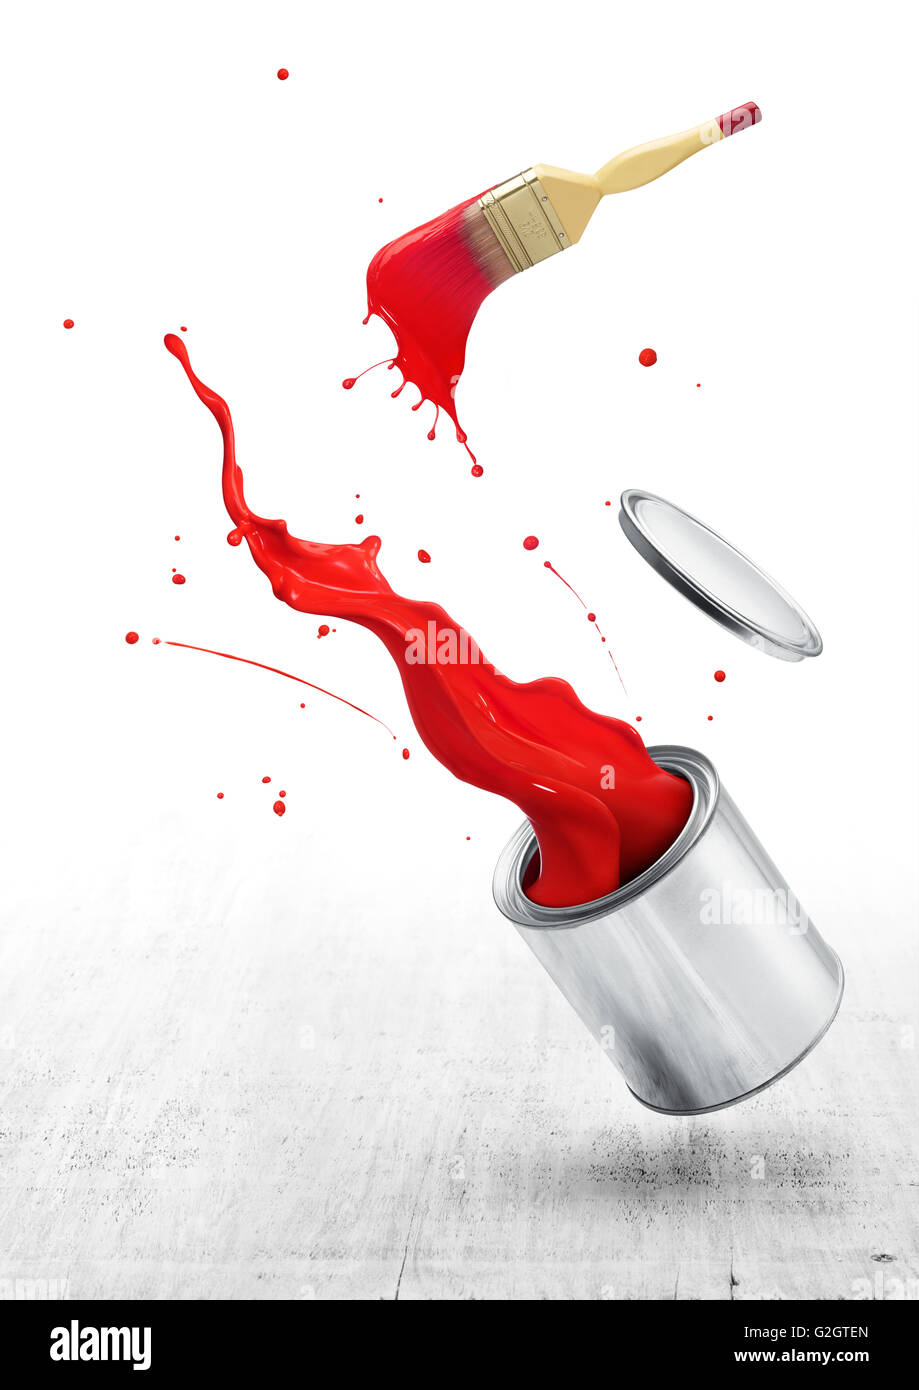 La vernice rossa schizzi fuori dal suo cucchiaio con pennello Foto Stock